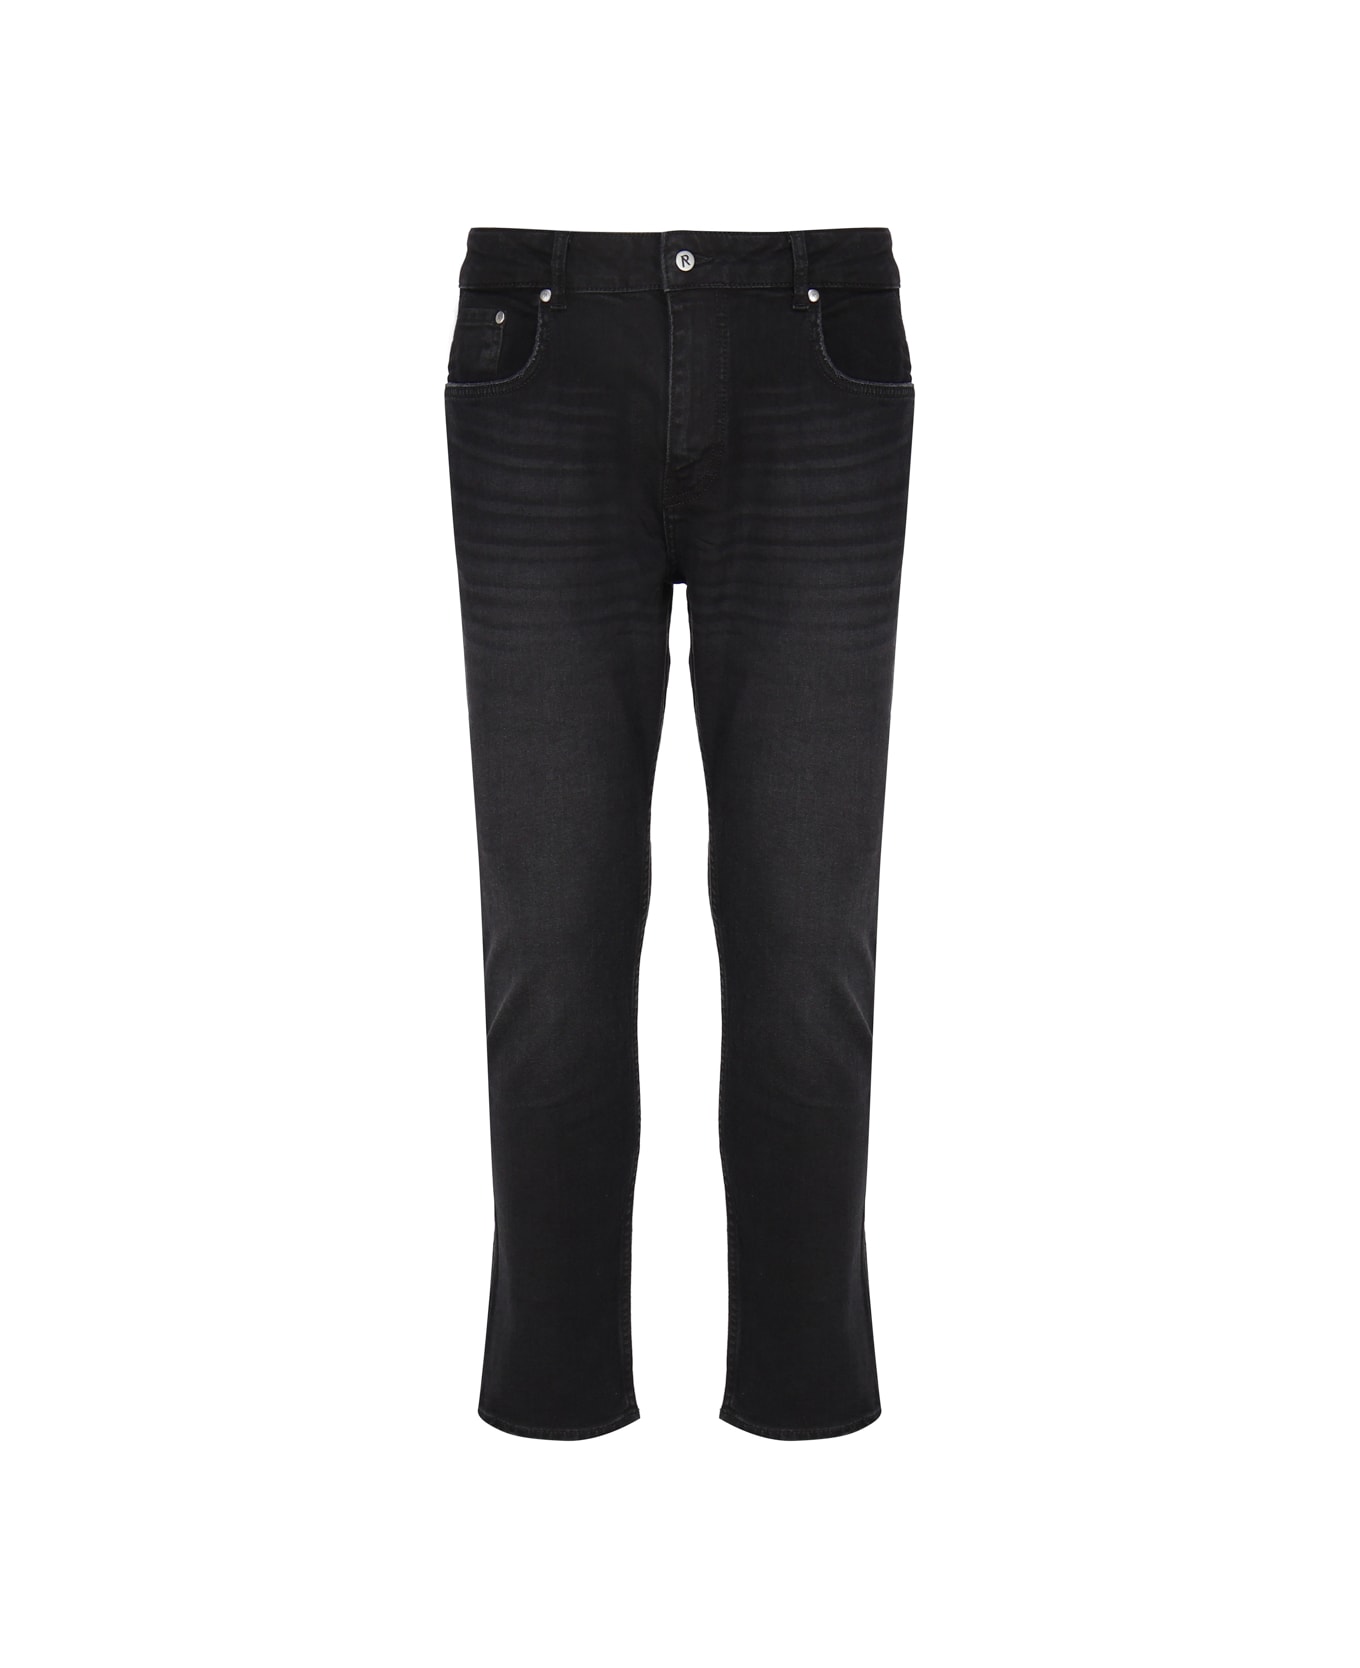 REPRESENT Classic Jeans In Denim Cotton - Black デニム